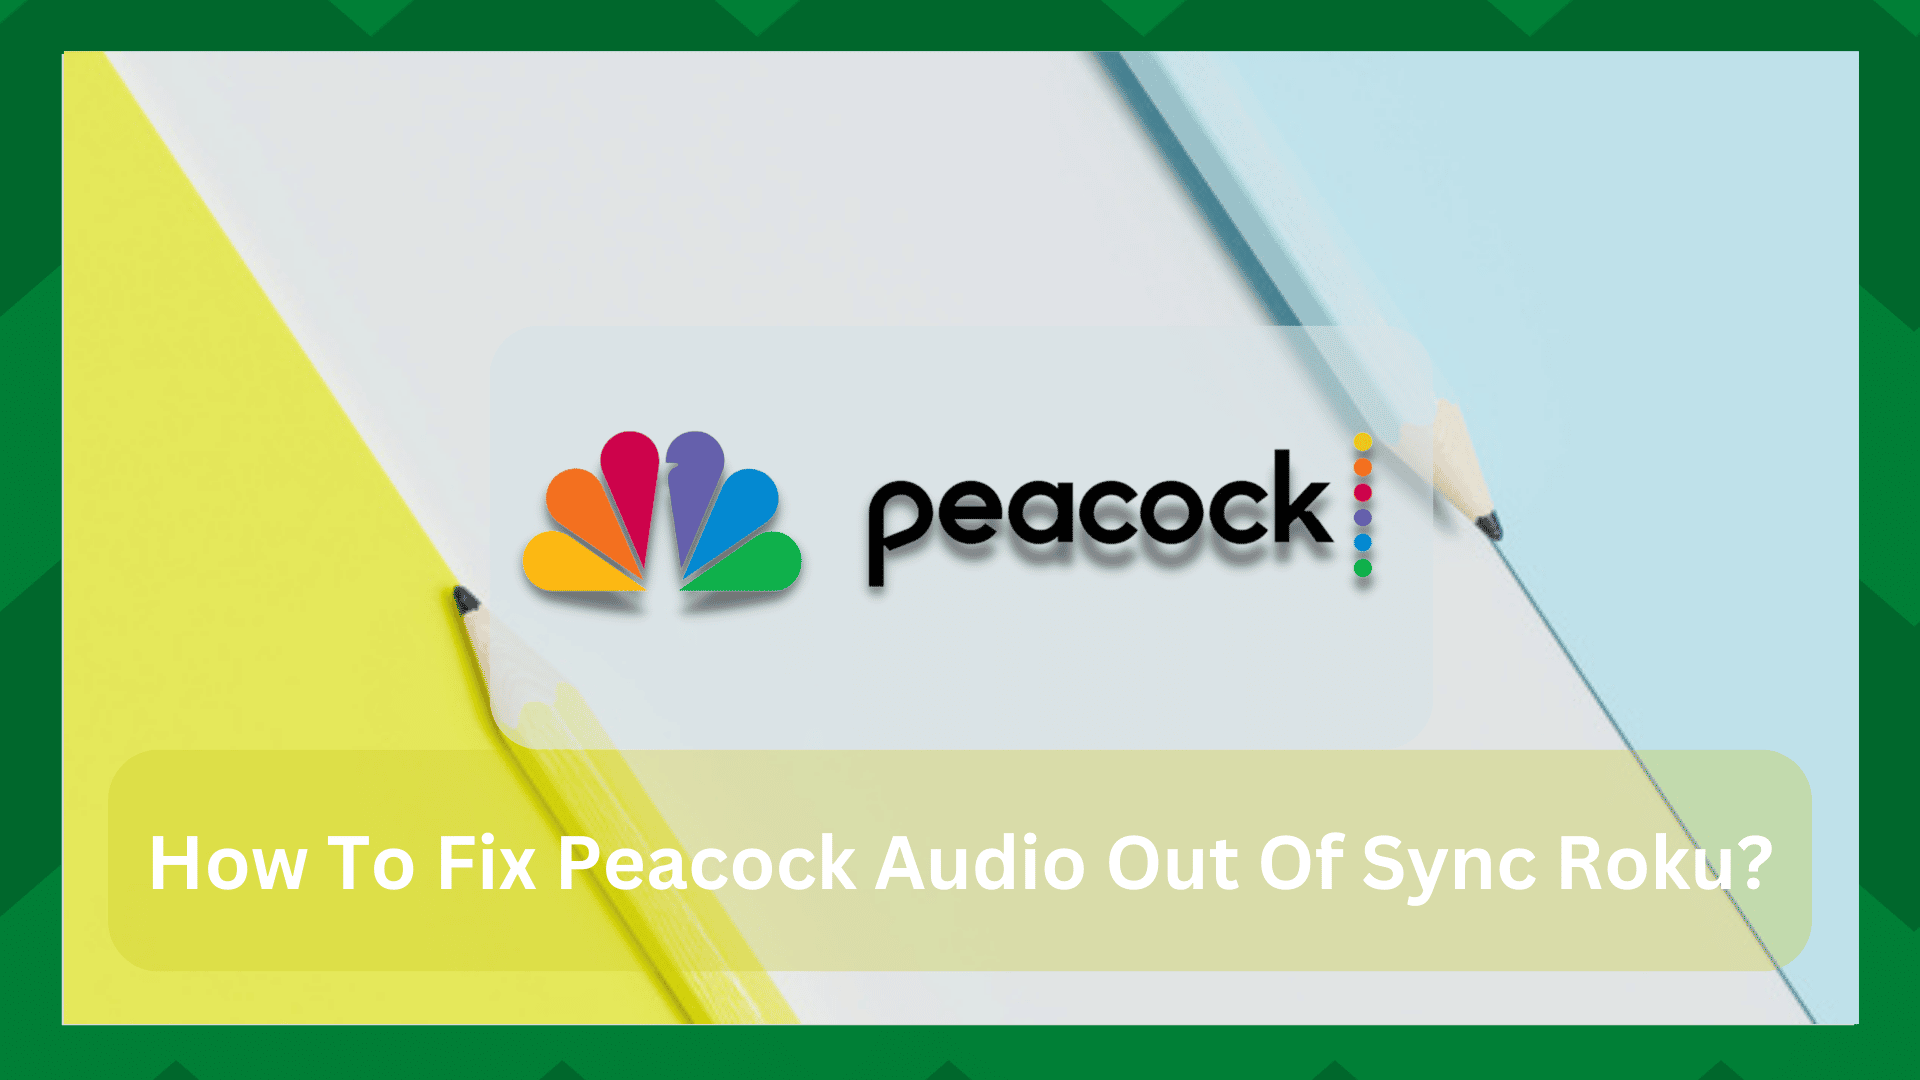 5 γρήγορες λύσεις για Peacock Audio Out Of Sync Roku